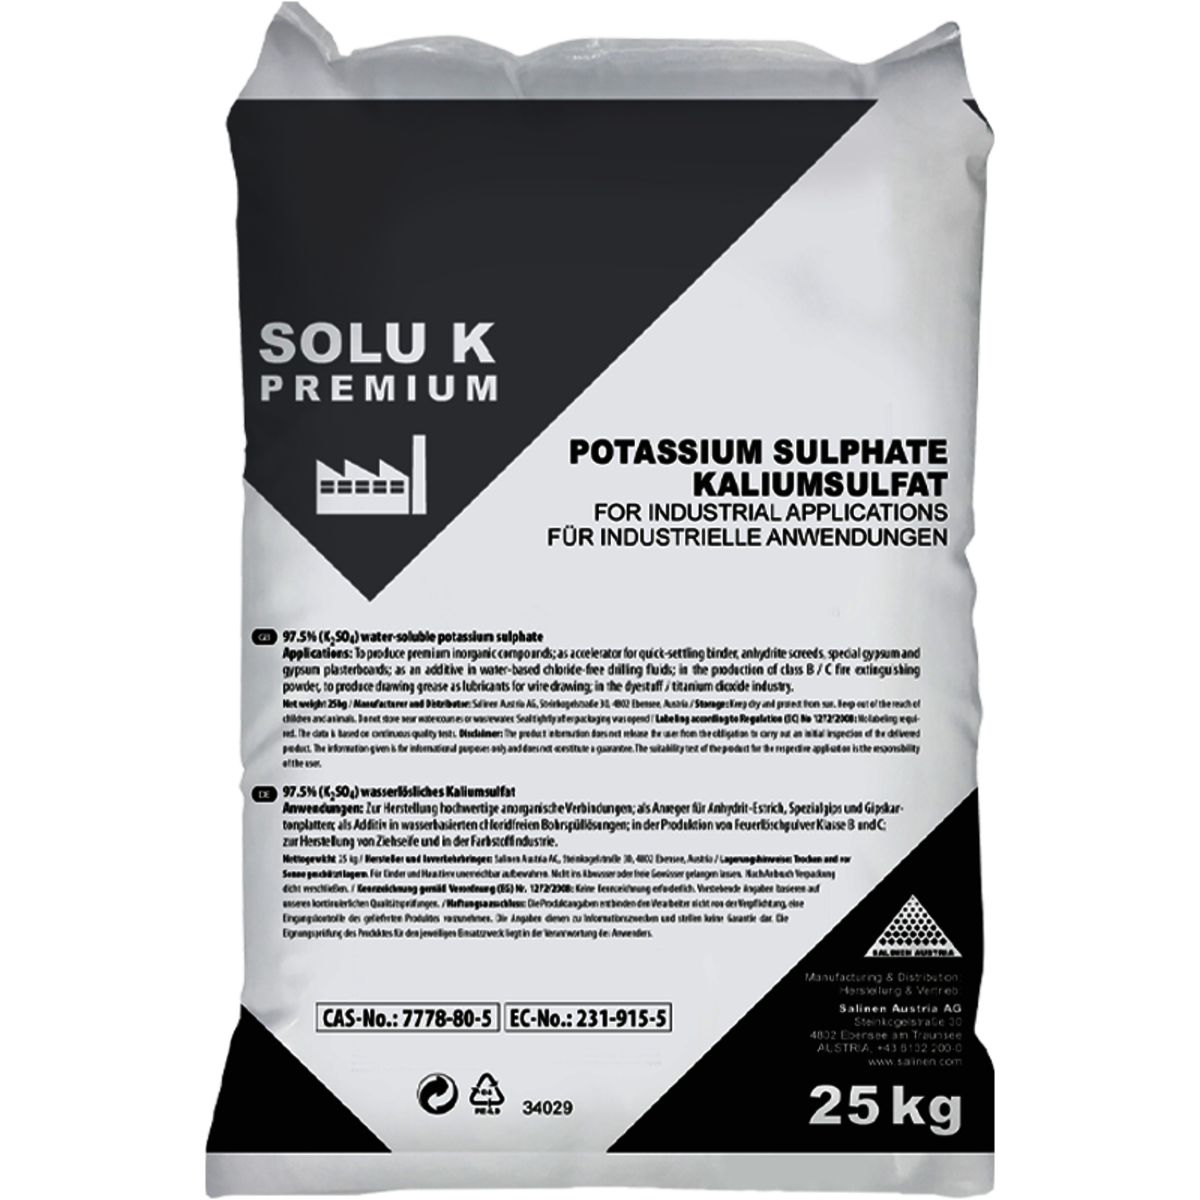 SOLU K Premium bag